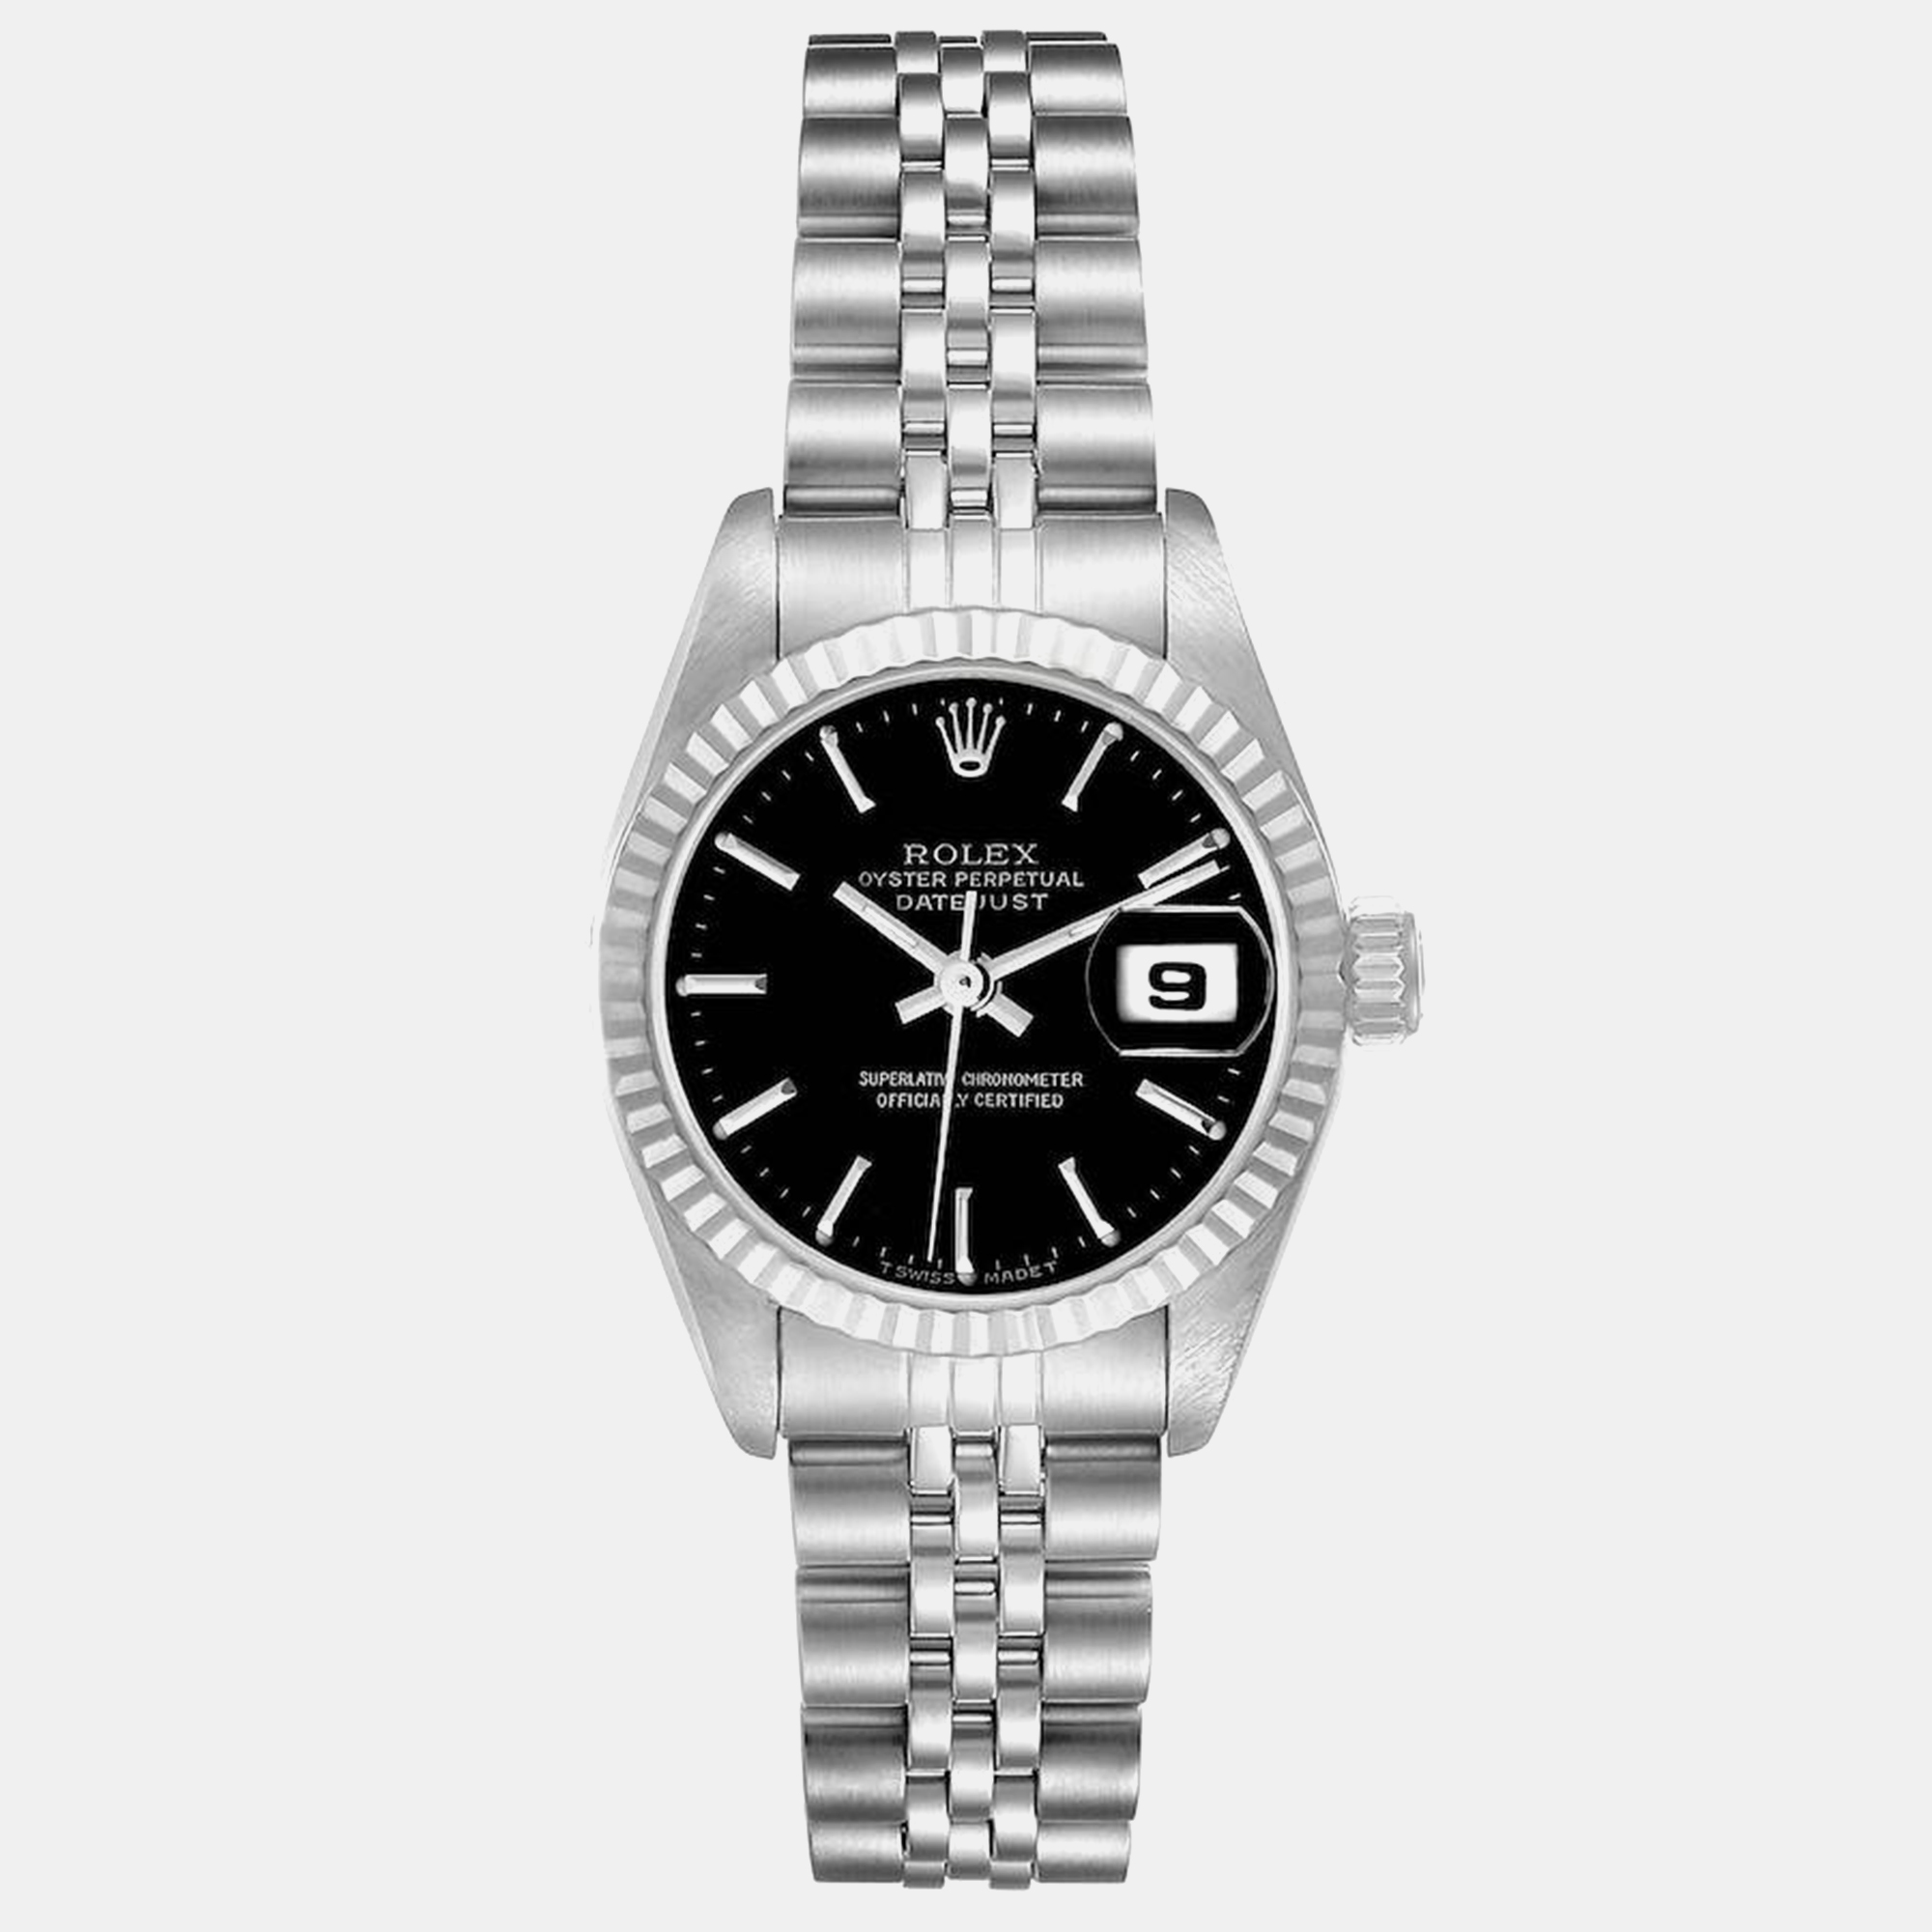 Rolex datejust steel white gold black dial ladies watch 179174 26 mm